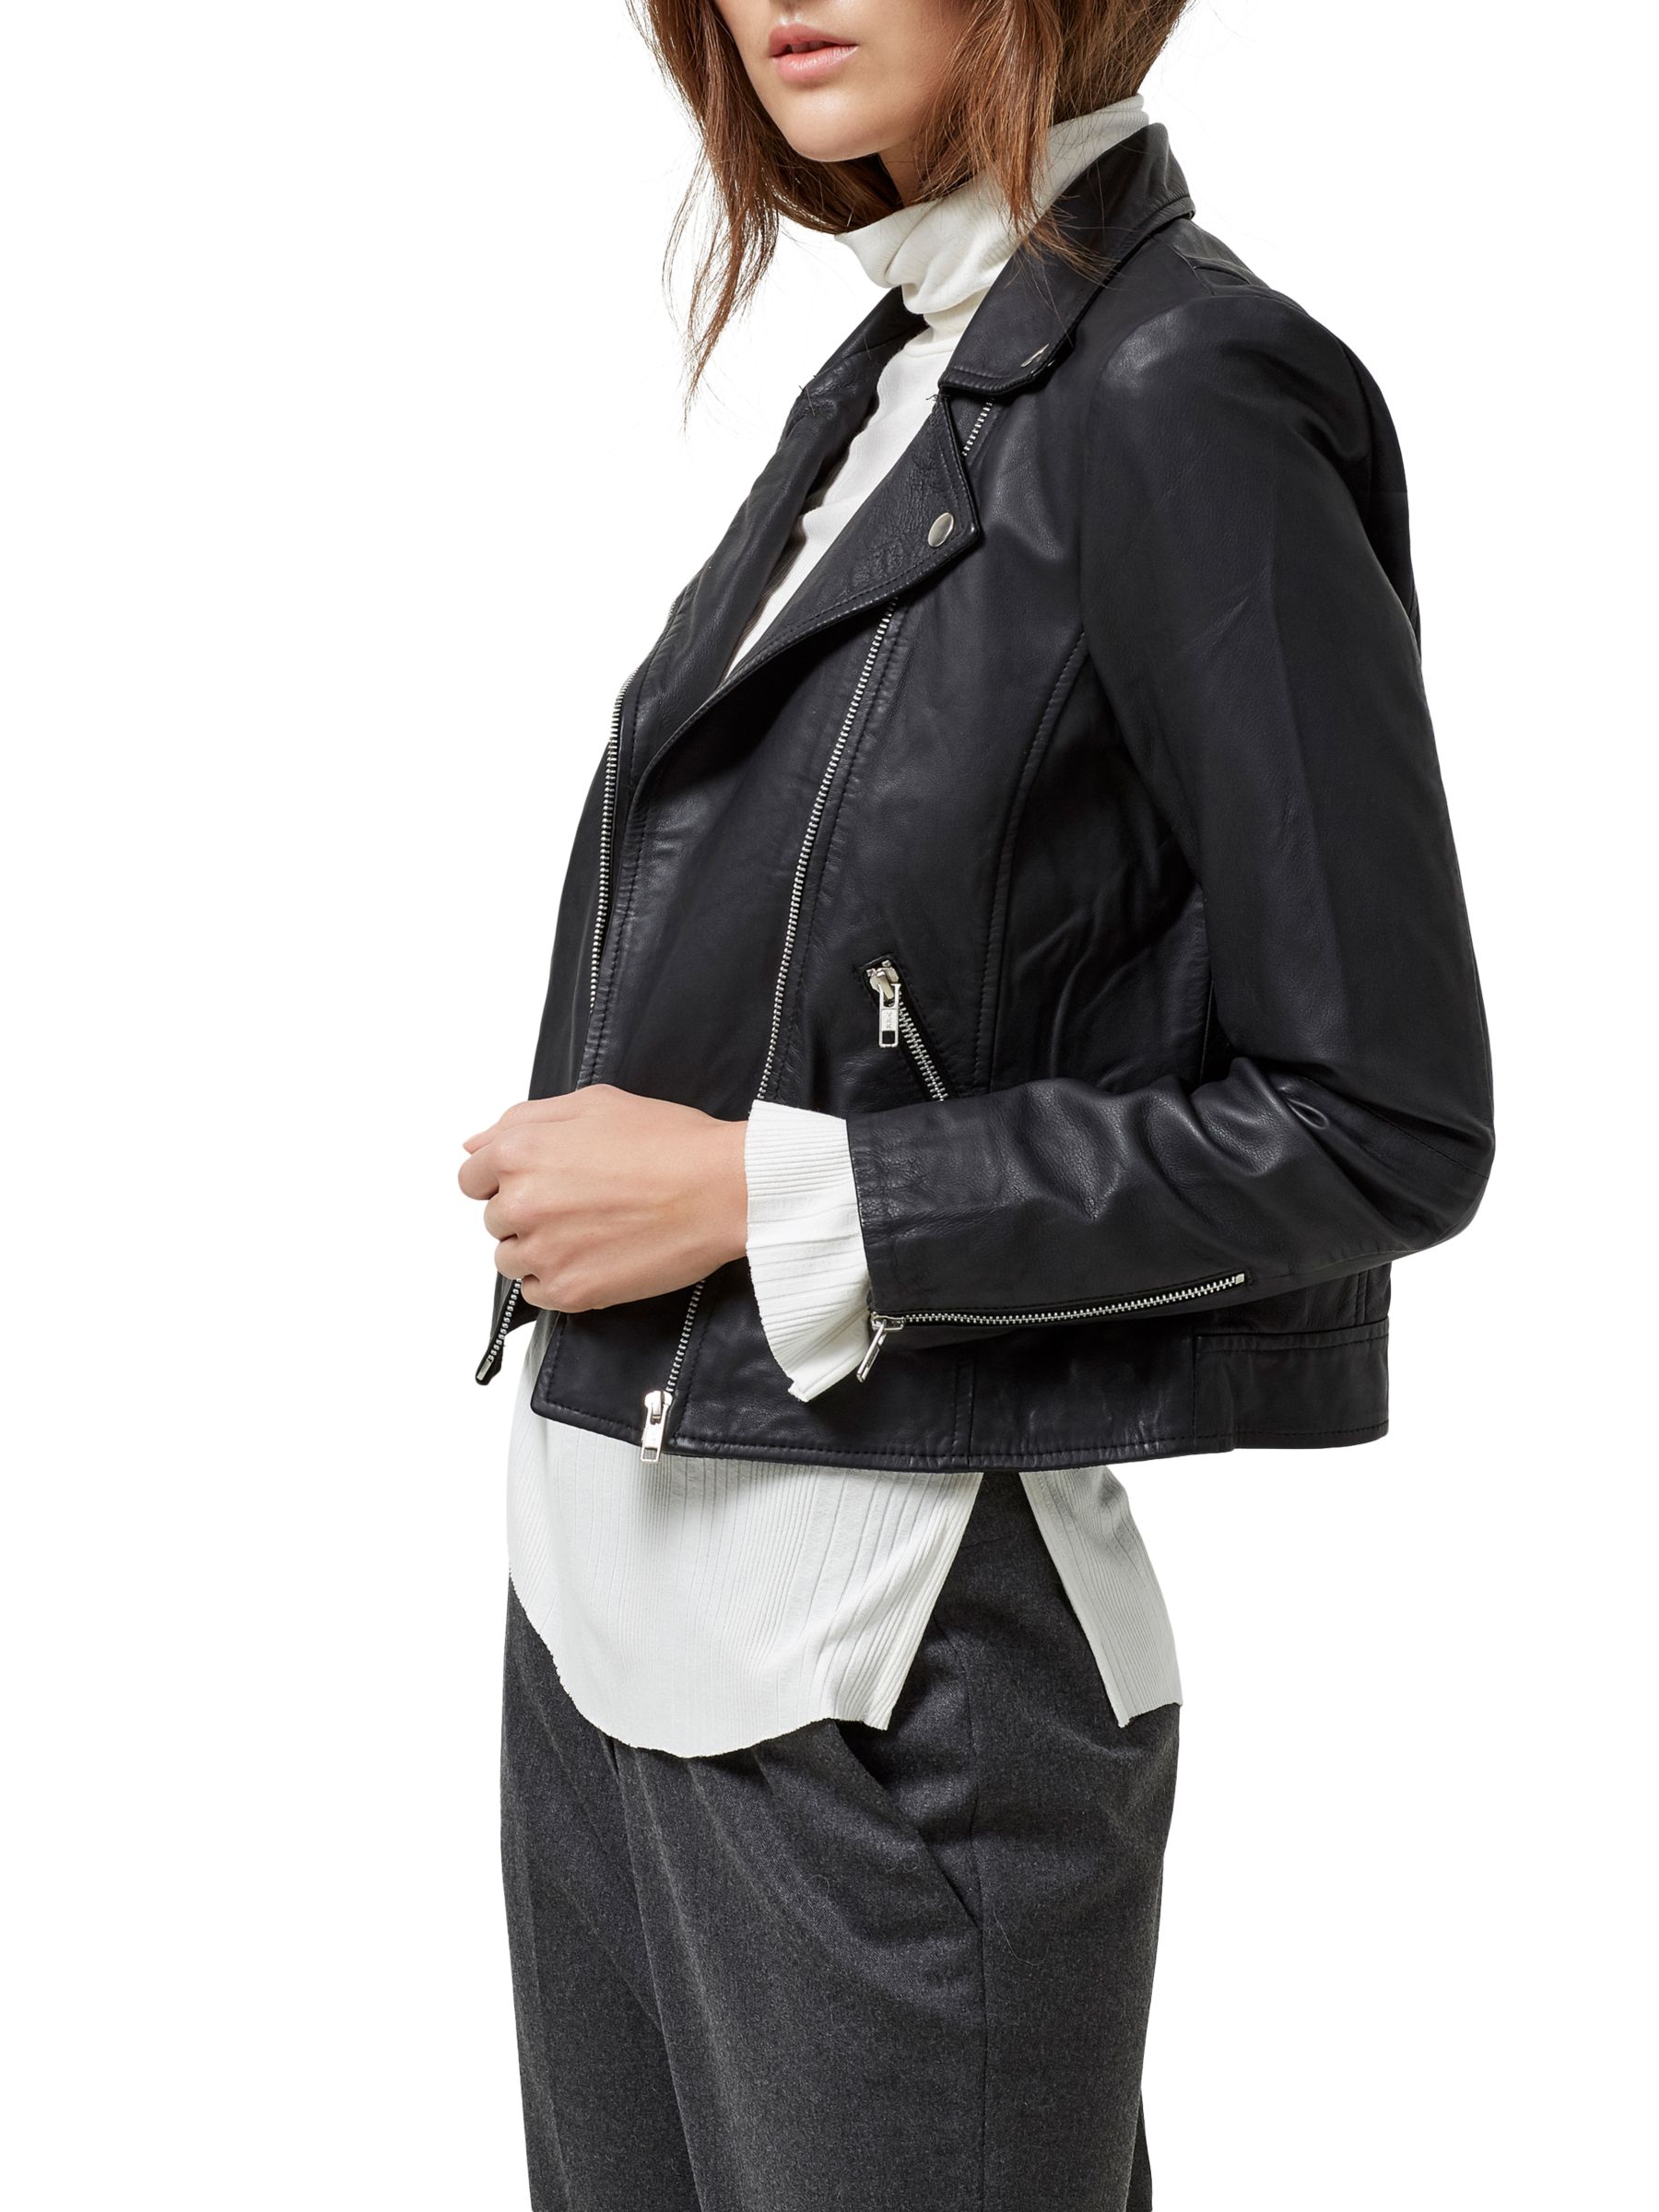 Selected Femme Marlen Leather Jacket, Black